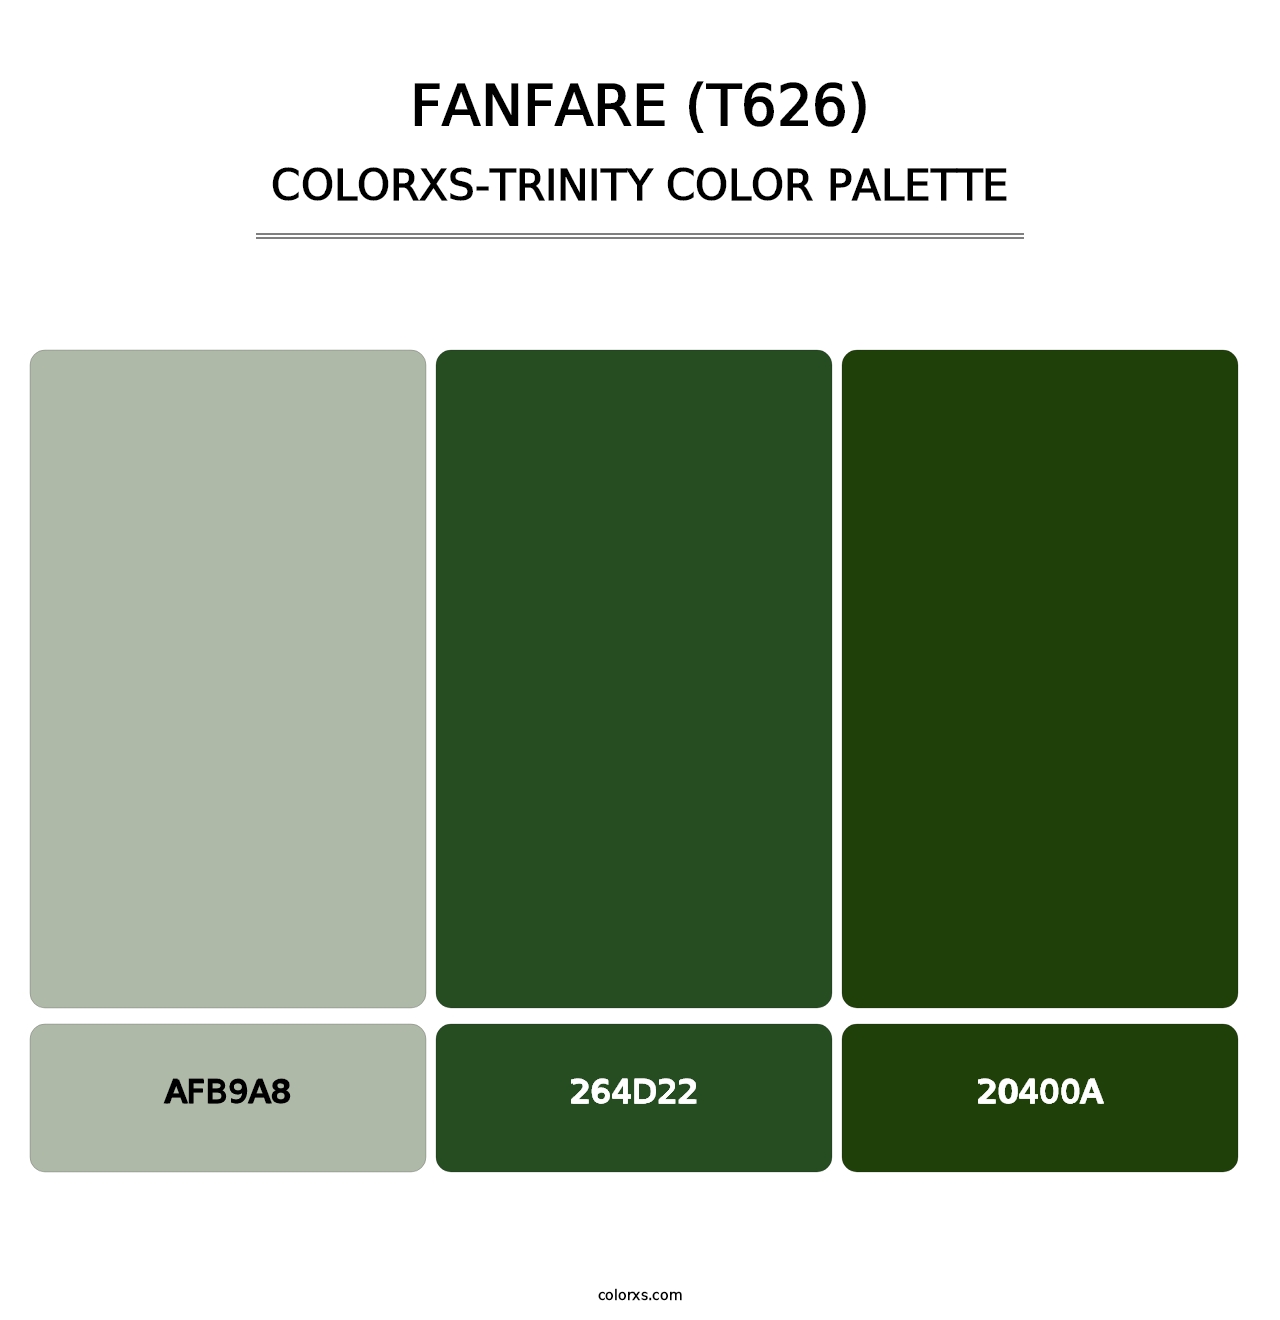 Fanfare (T626) - Colorxs Trinity Palette